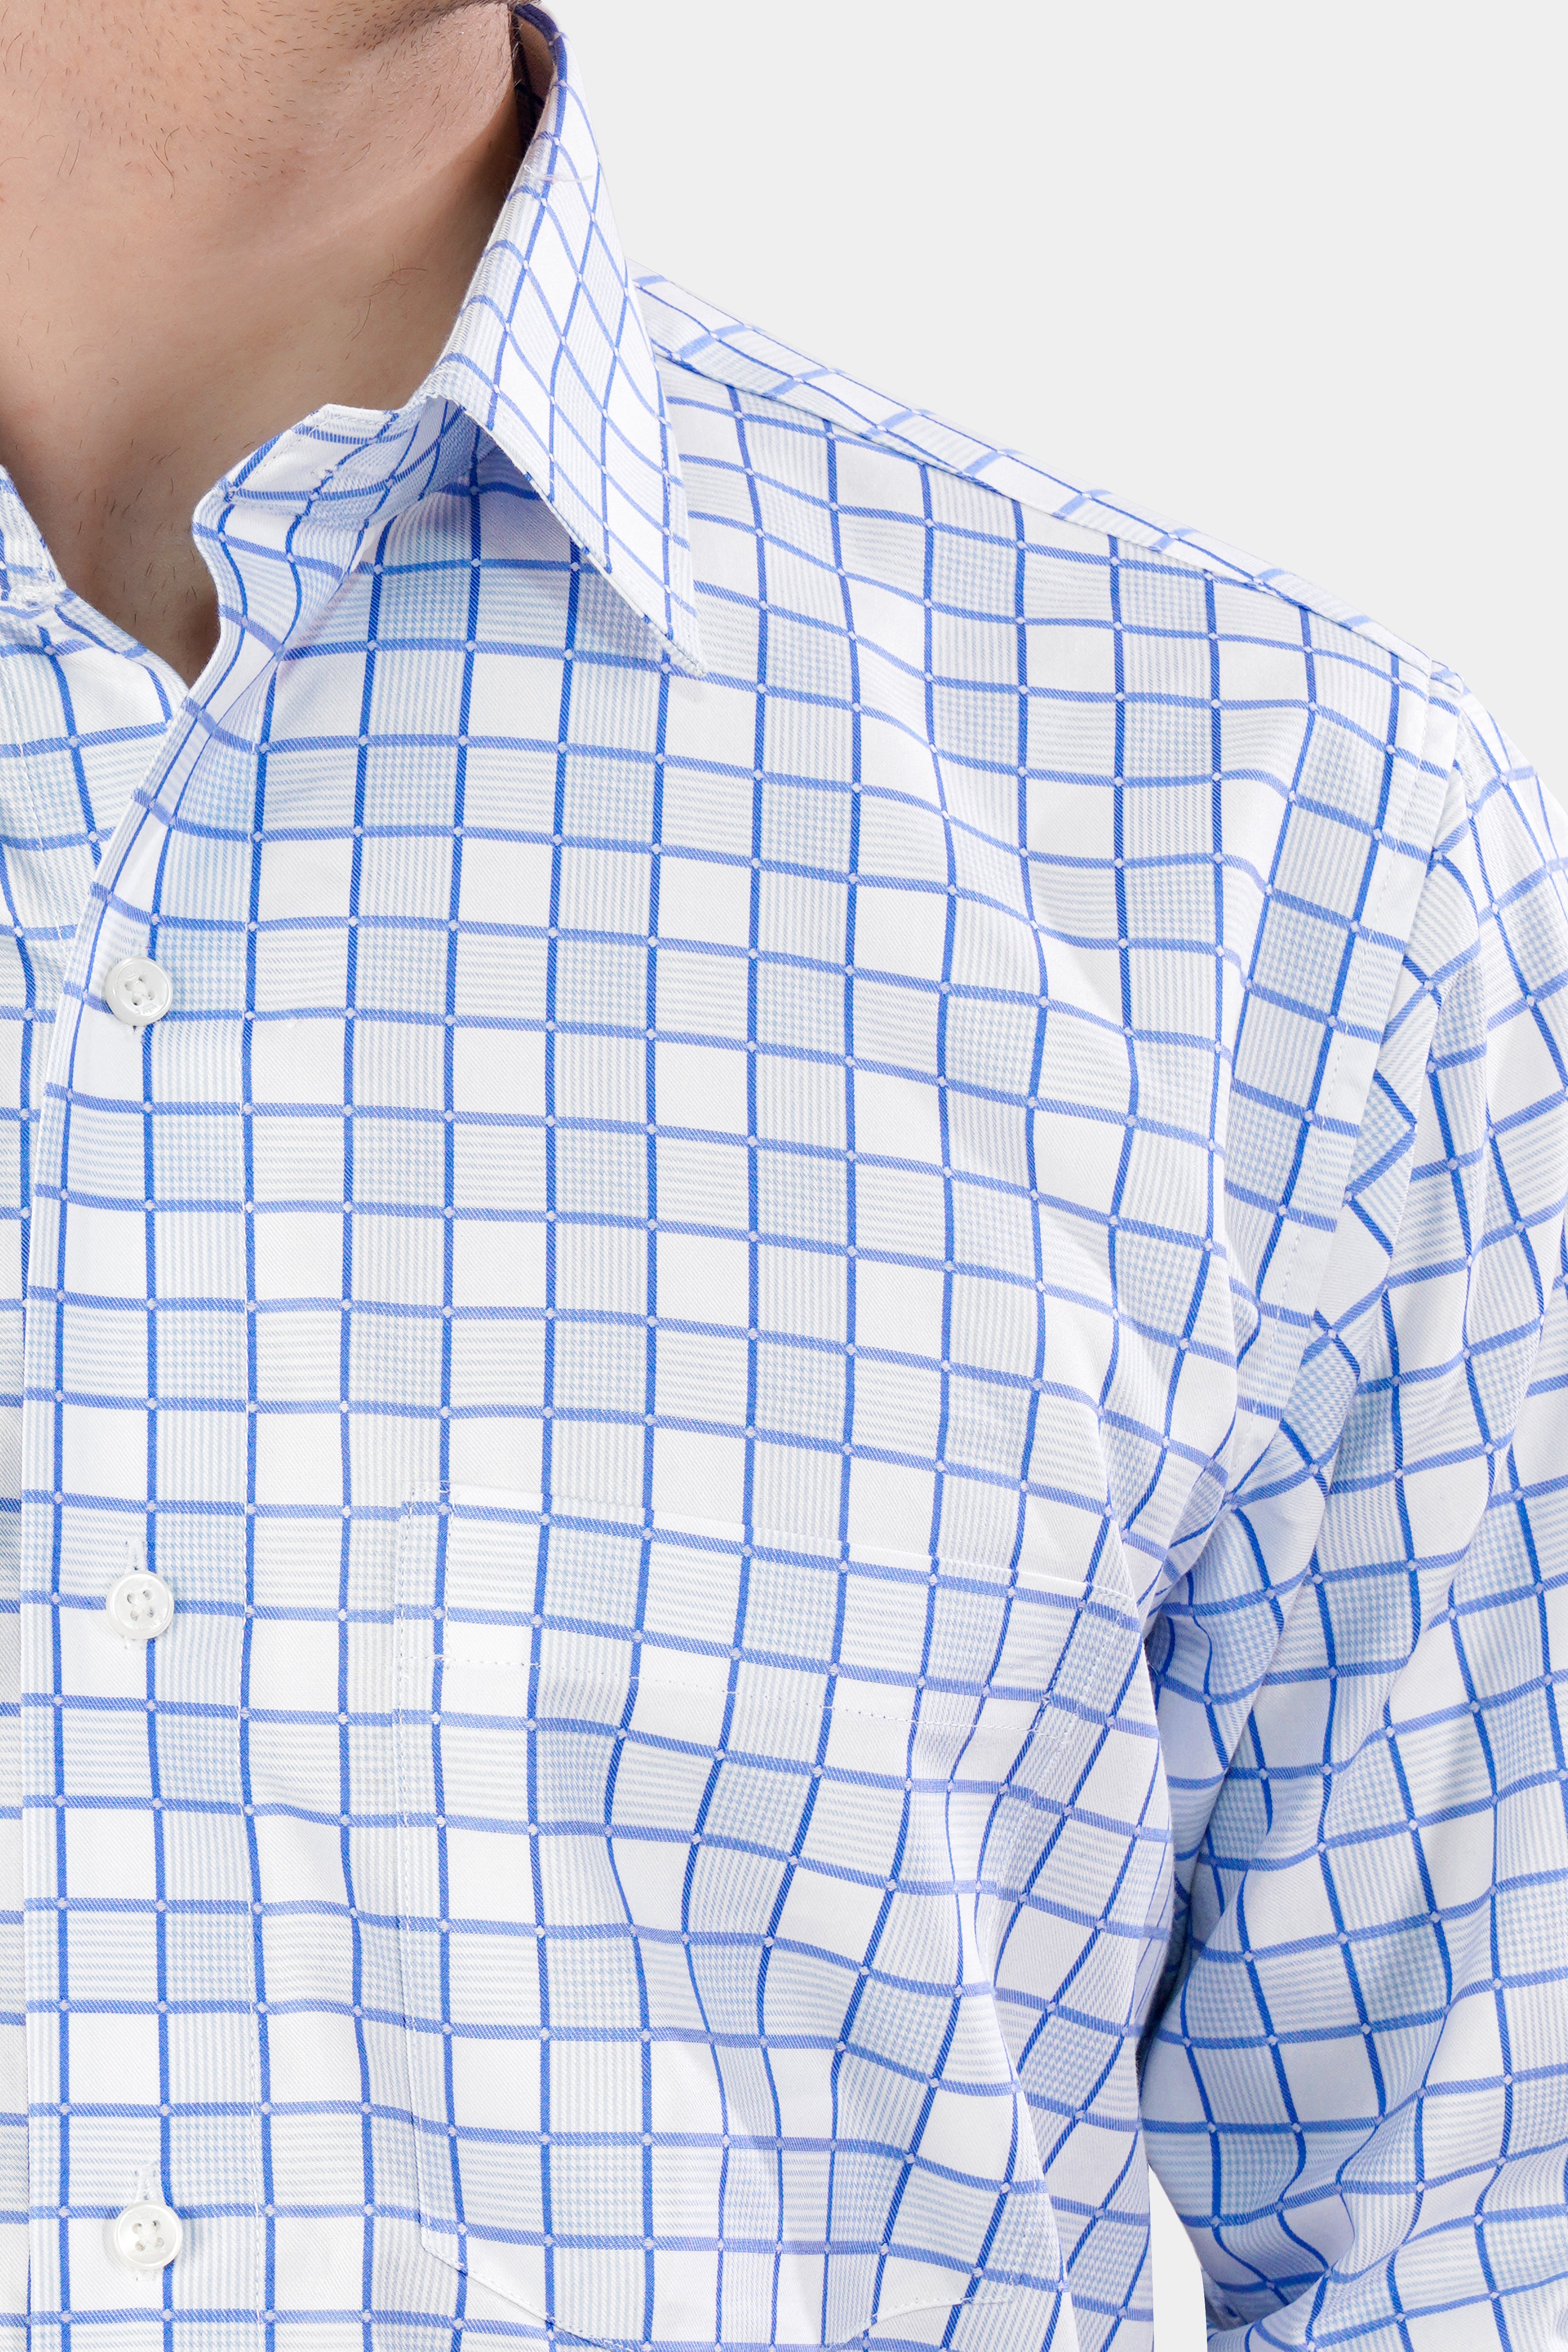 Havelock Blue and White Checkered Dobby Textured Premium Giza Cotton Shirt